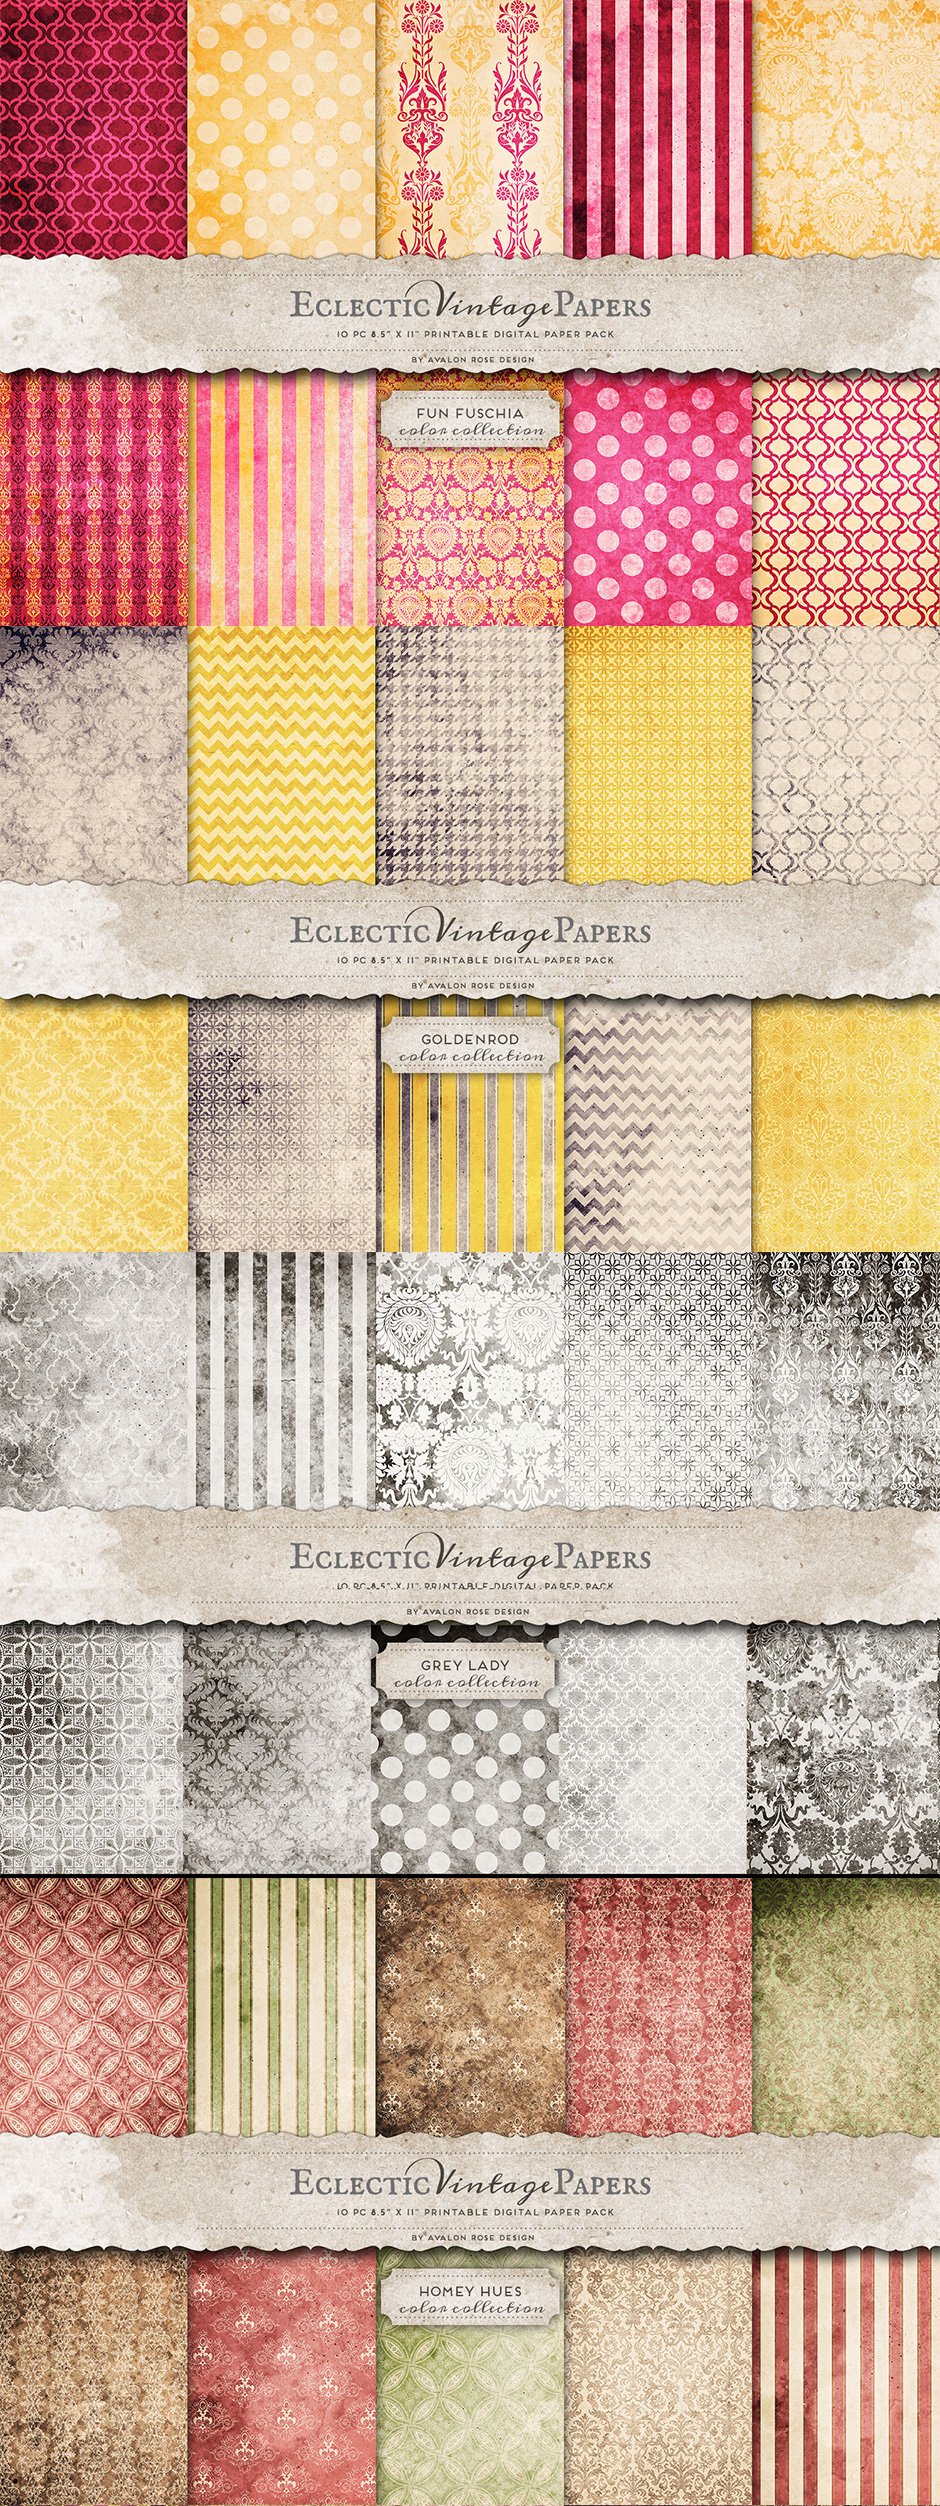 Vintage Paper Patterns Mega Pack